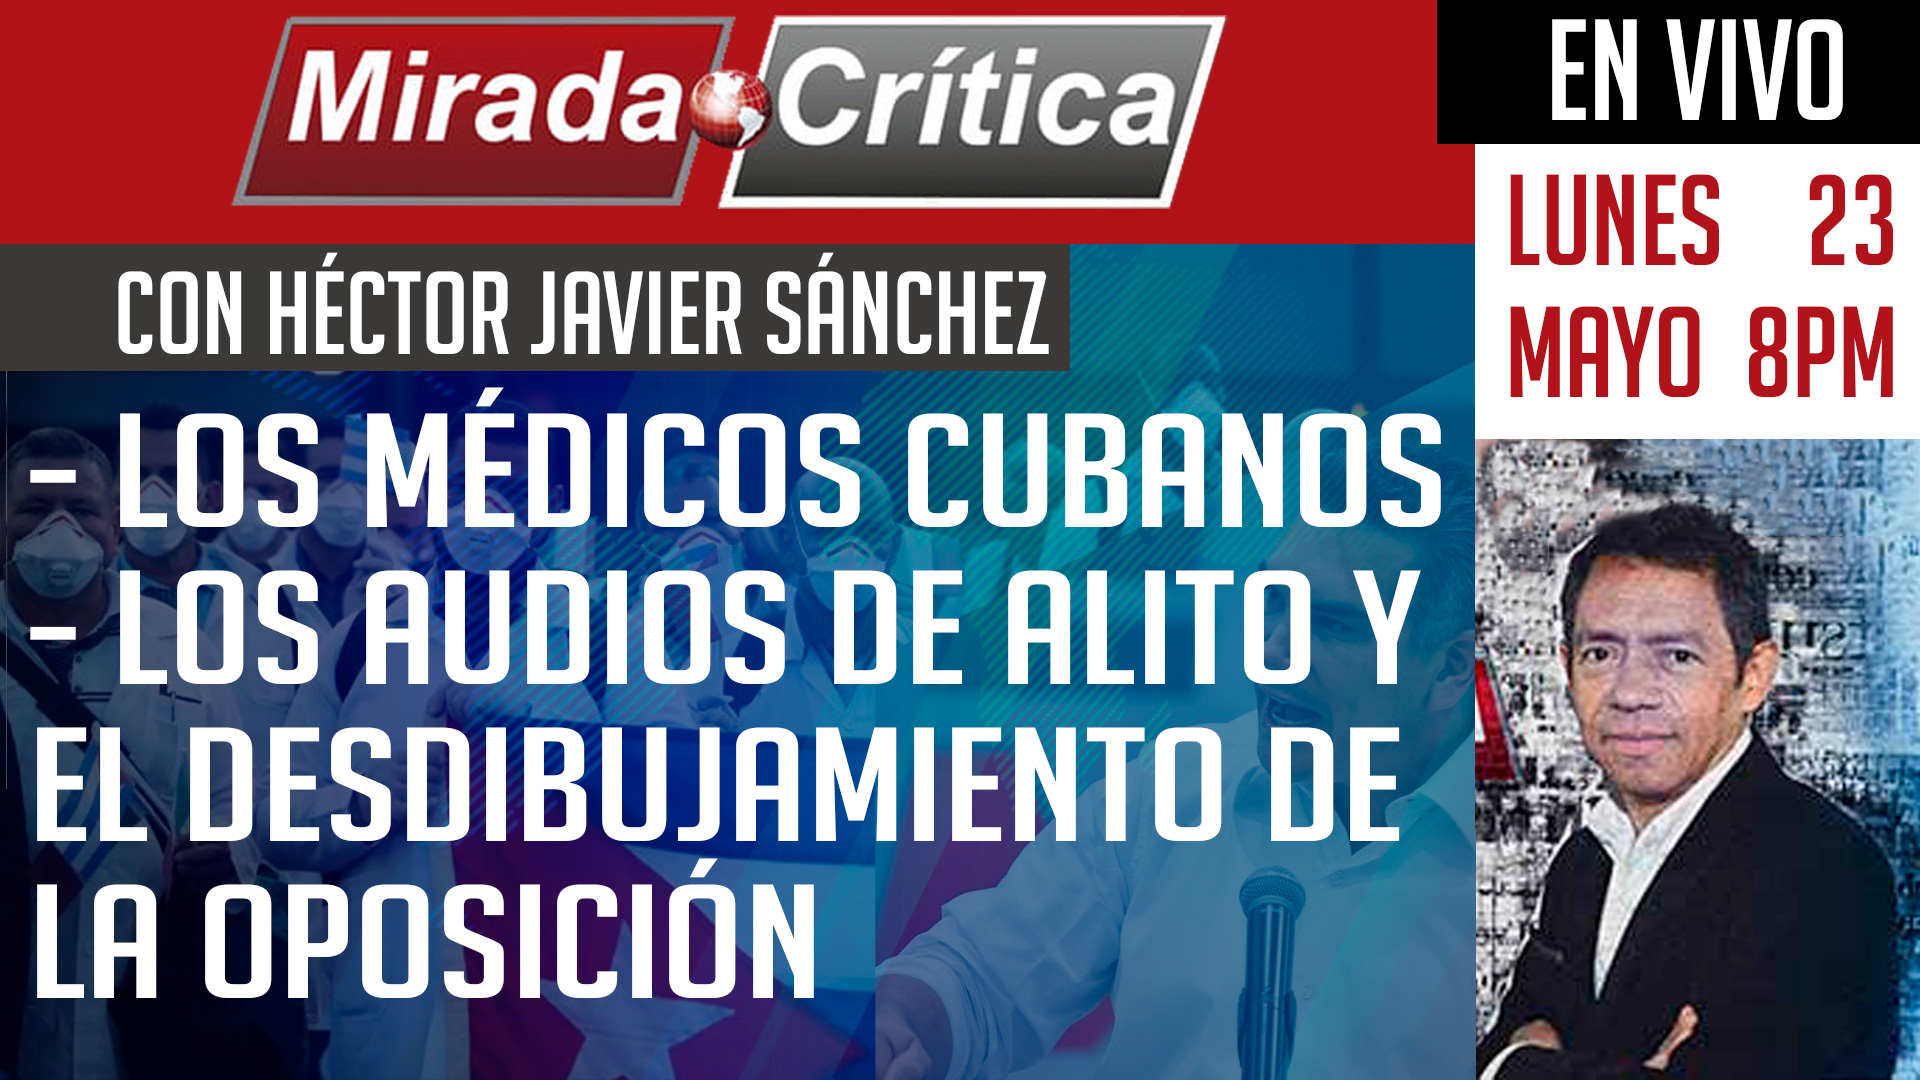 Los médicos cubanos / Los audios de Alito y el desdibujamiento de la oposición - Mirada Crítica